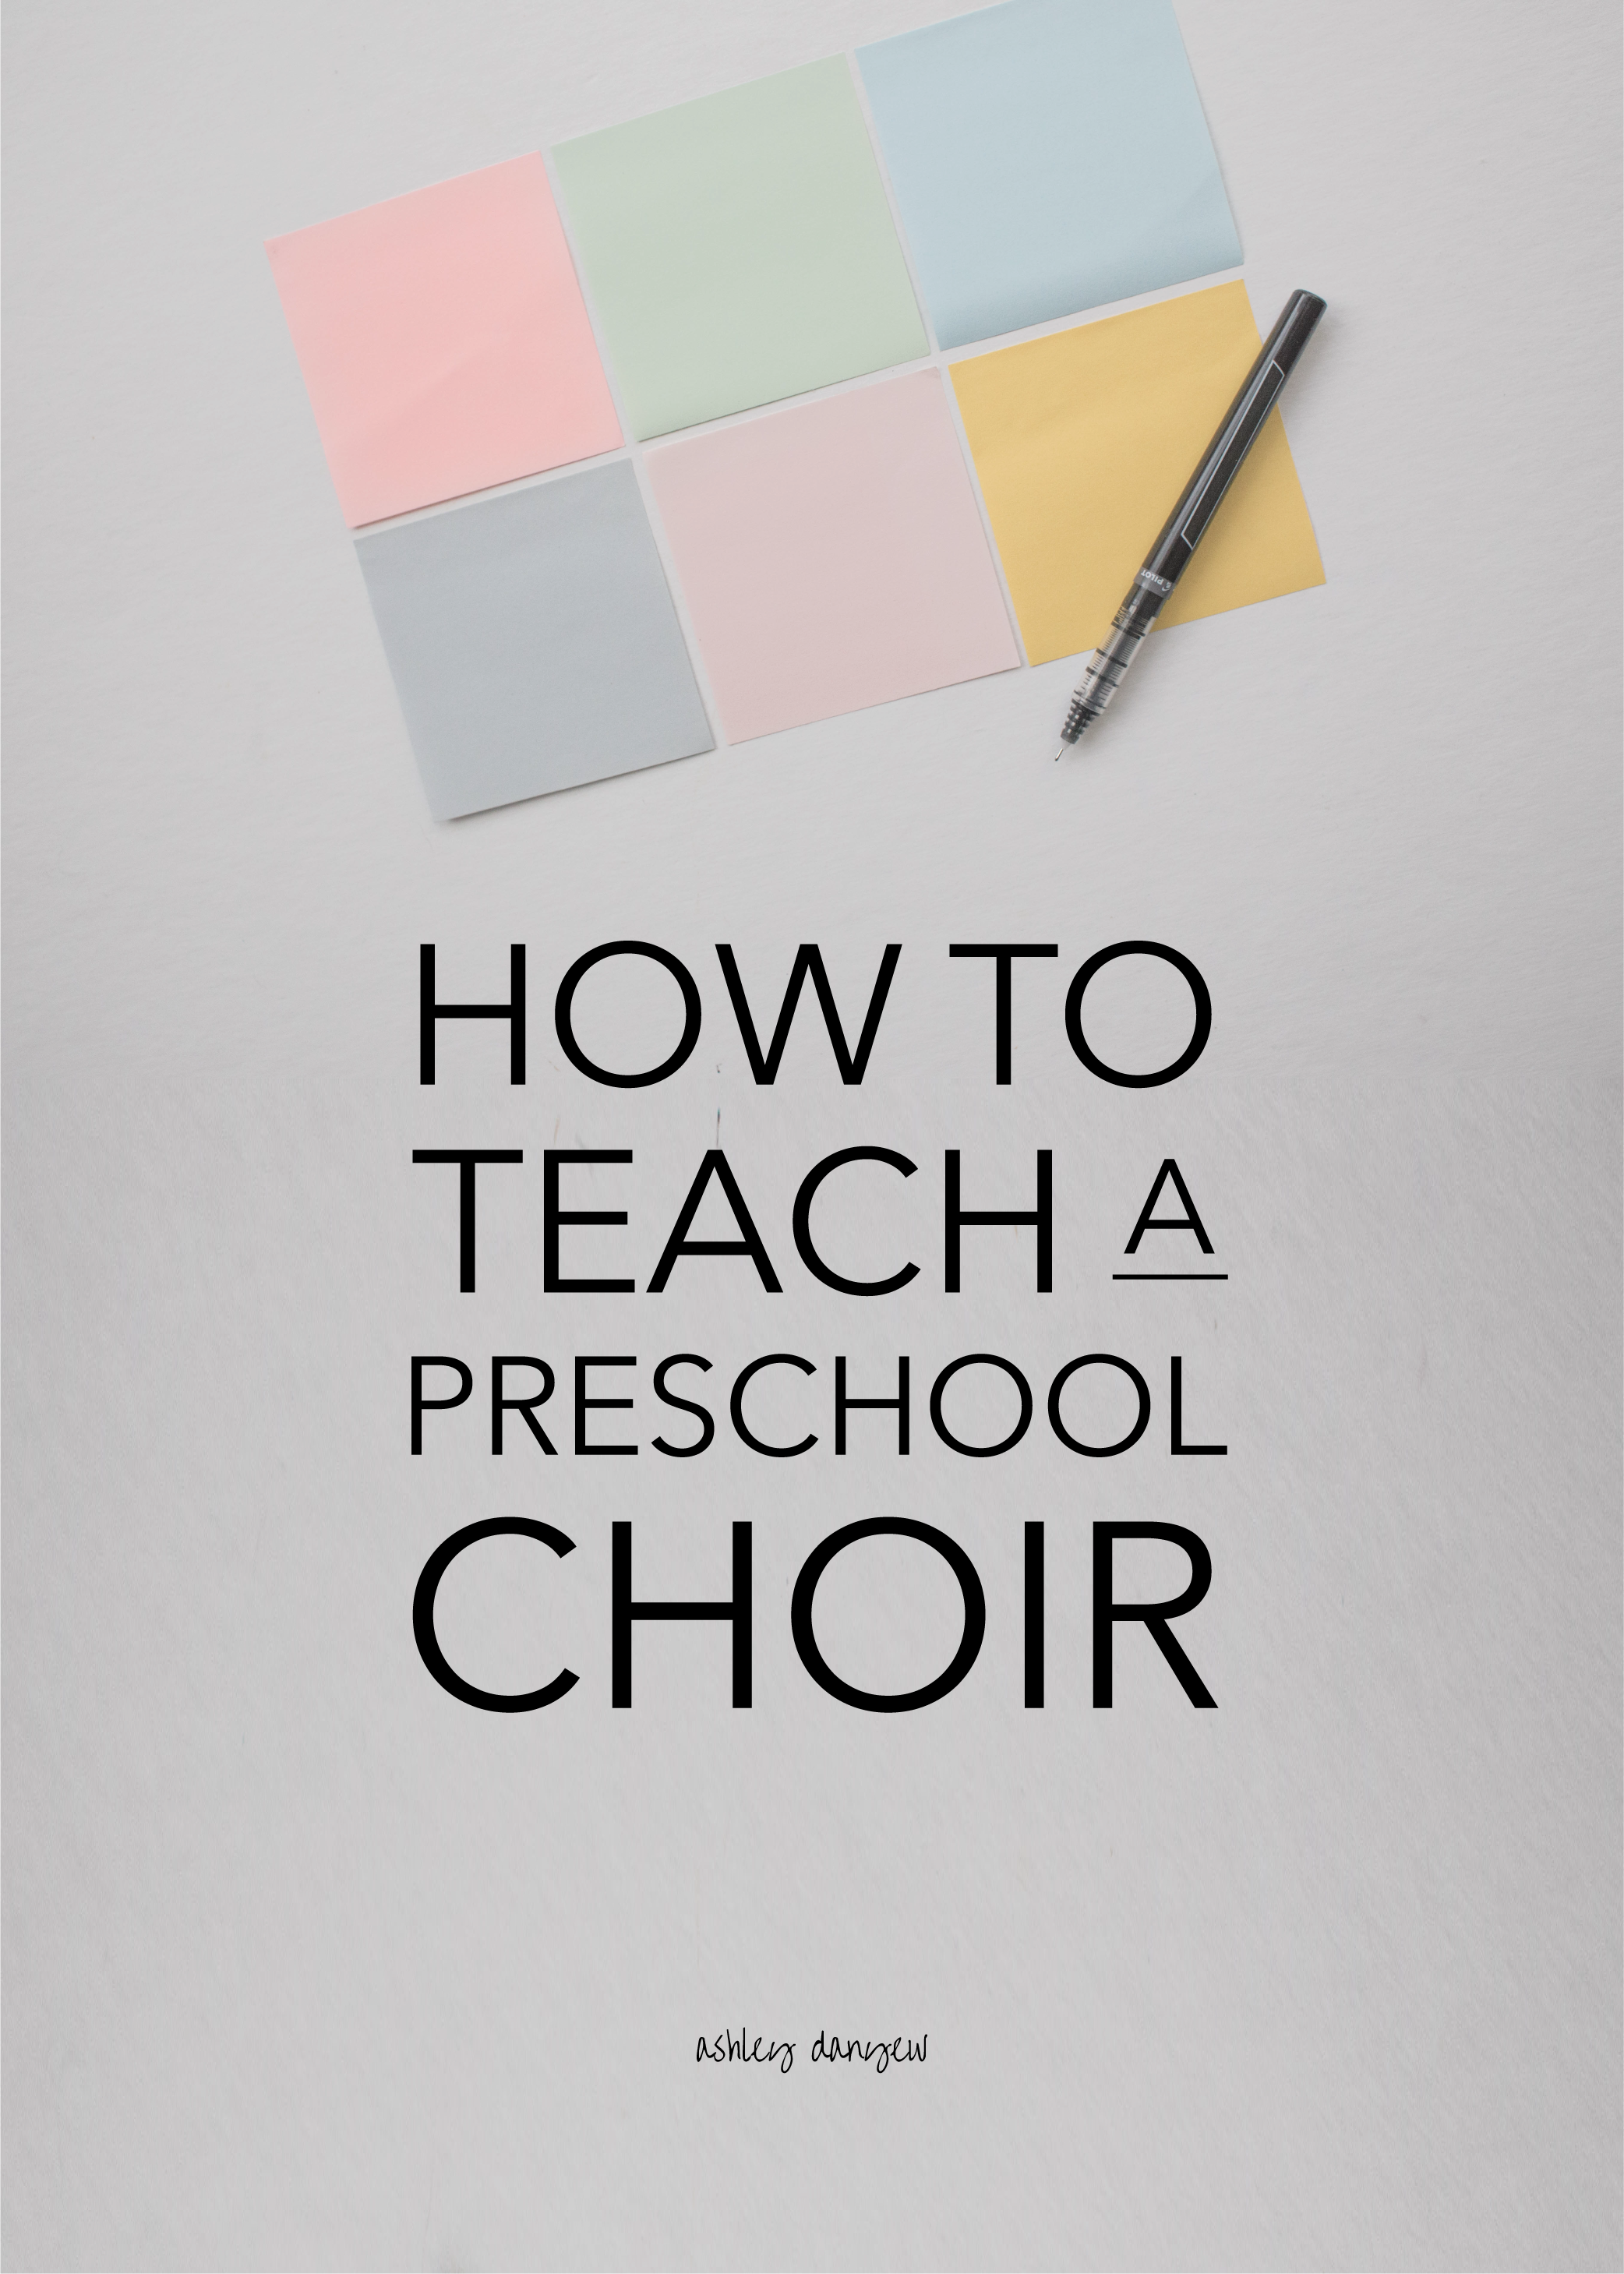 How to Teach a Preschool Choir